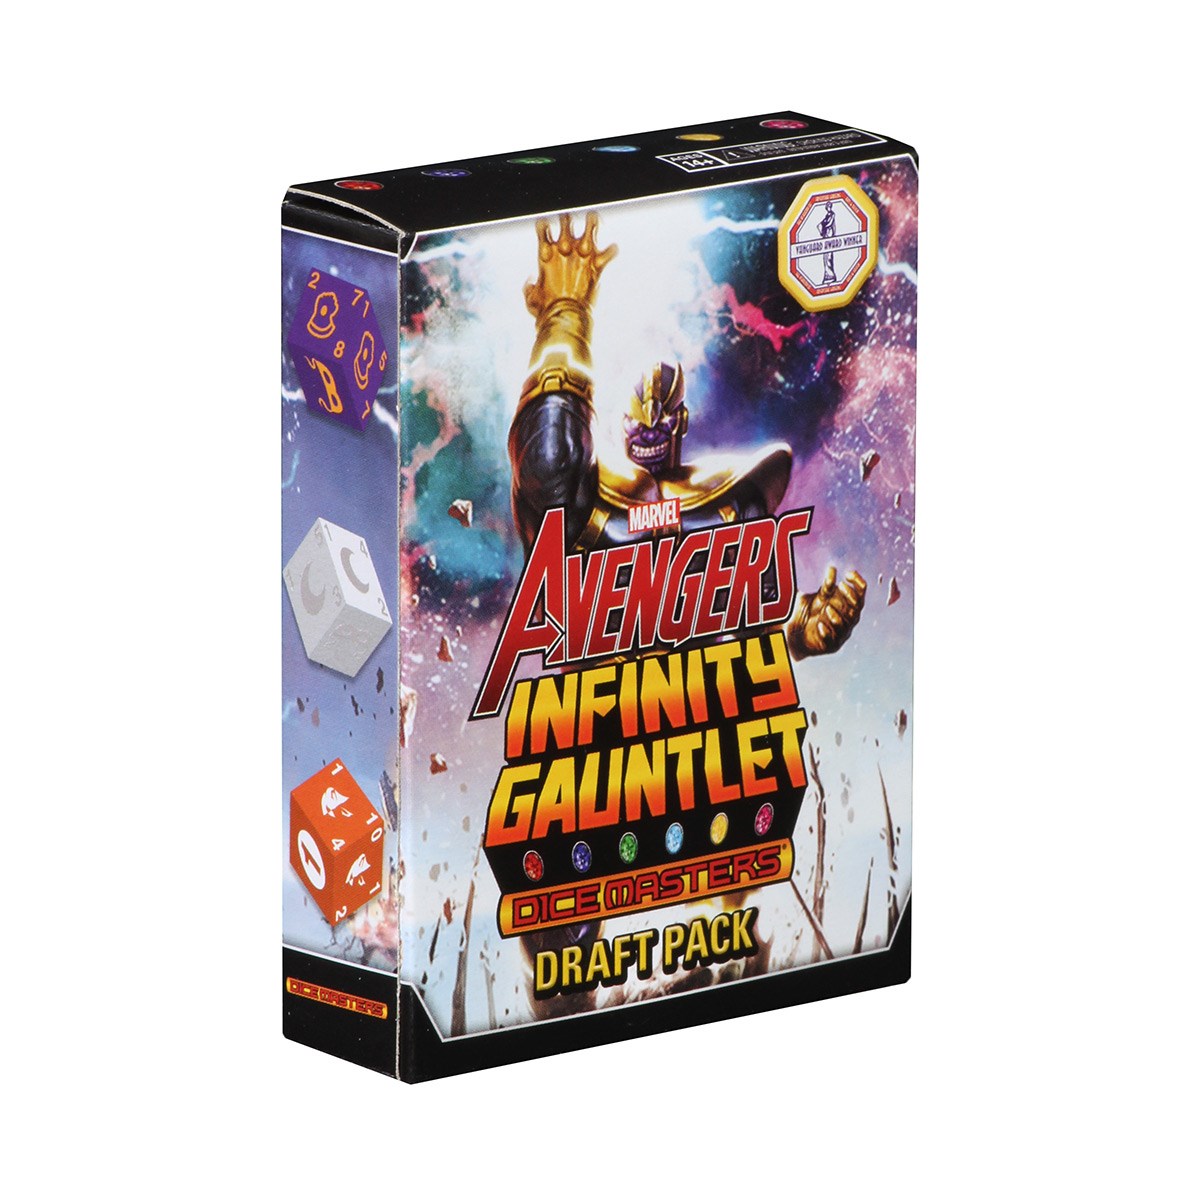 Marvel Dice Masters Avengers Infinity Gauntlet Draft Pack MKGXNTN8VM |0|